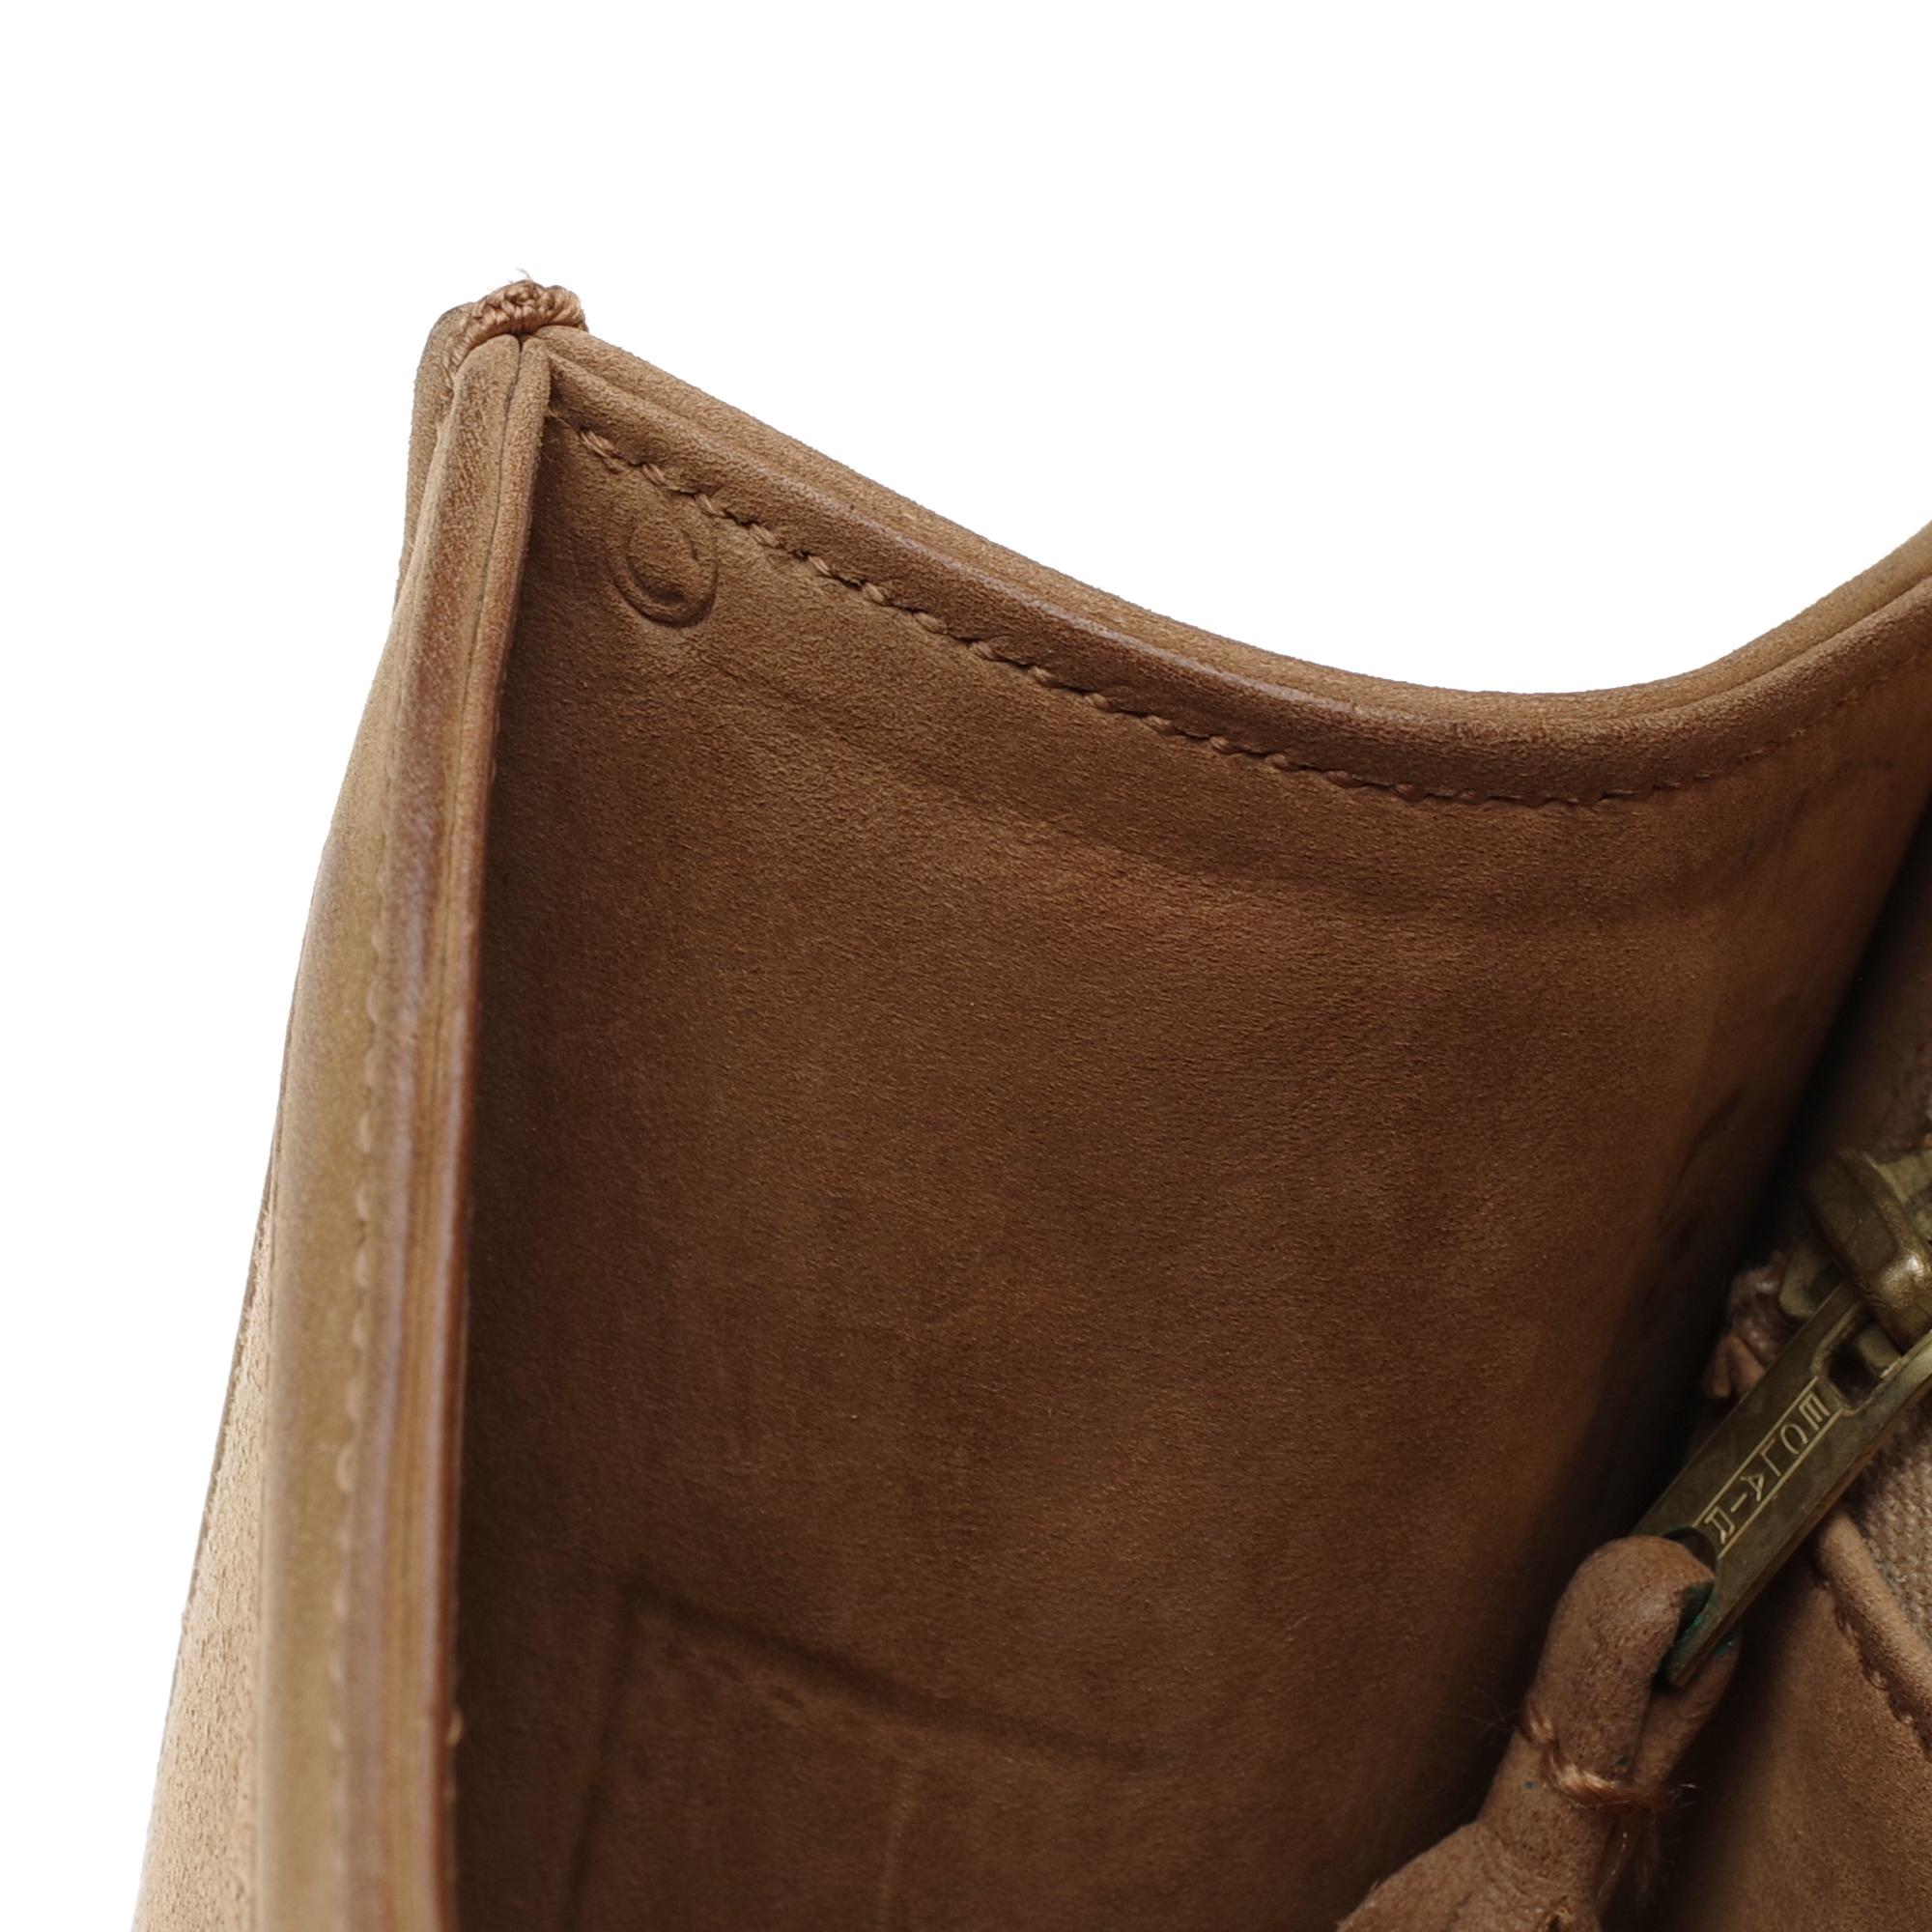 Brown VERY RARE Hermes Constance  DOBLIS shoulder bag in sand color & Gold hardware!